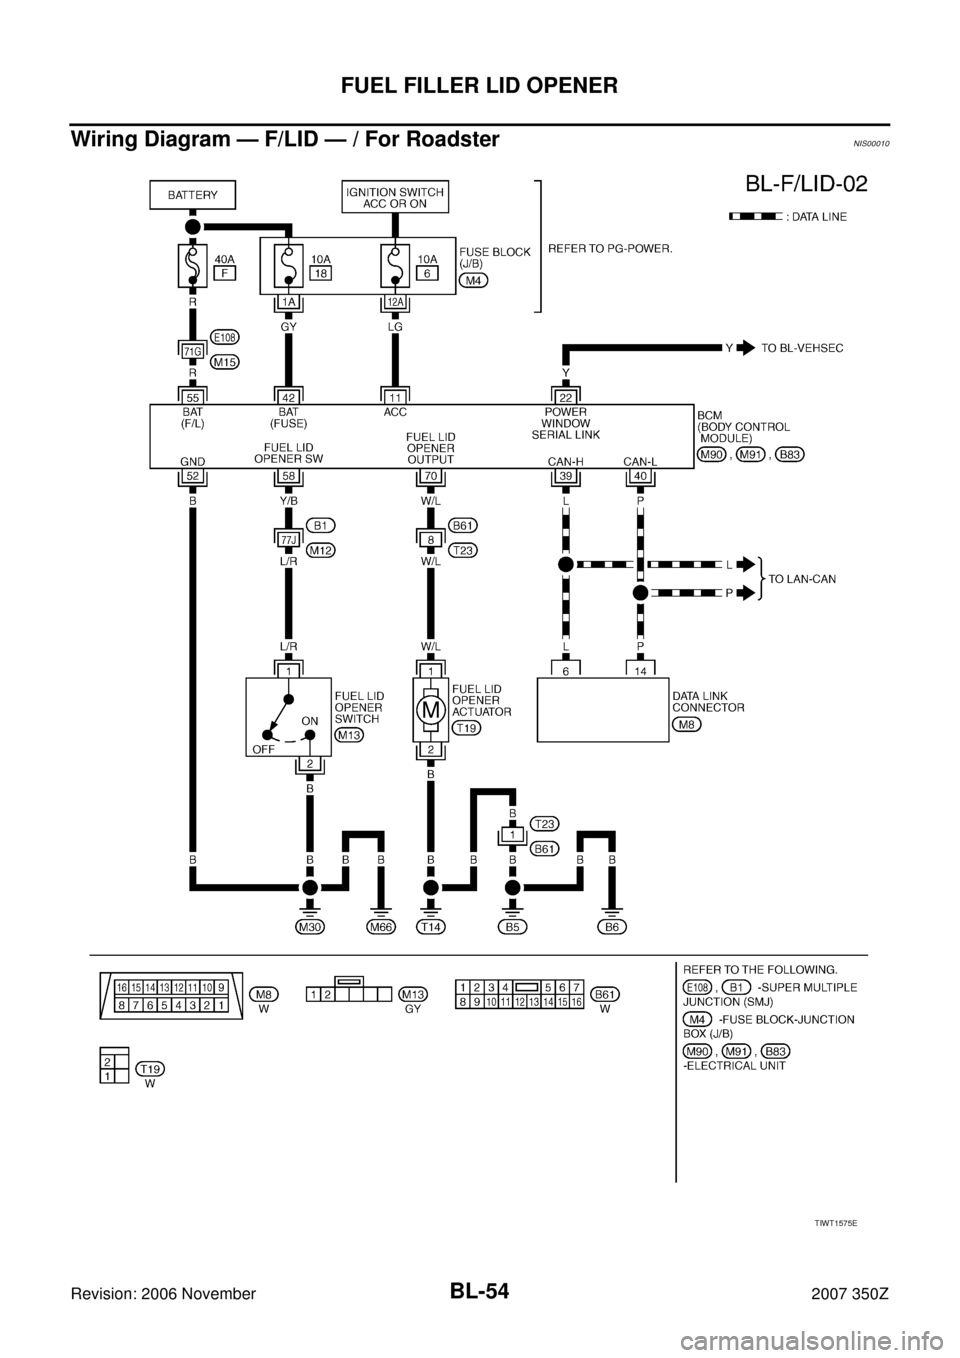 NISSAN 350Z 2007 Z33 Body, Lock And Security System Workshop Manual BL-54
FUEL FILLER LID OPENER
Revision: 2006 November2007 350Z
Wiring Diagram — F/LID — / For RoadsterNIS00010
TIWT1575E 